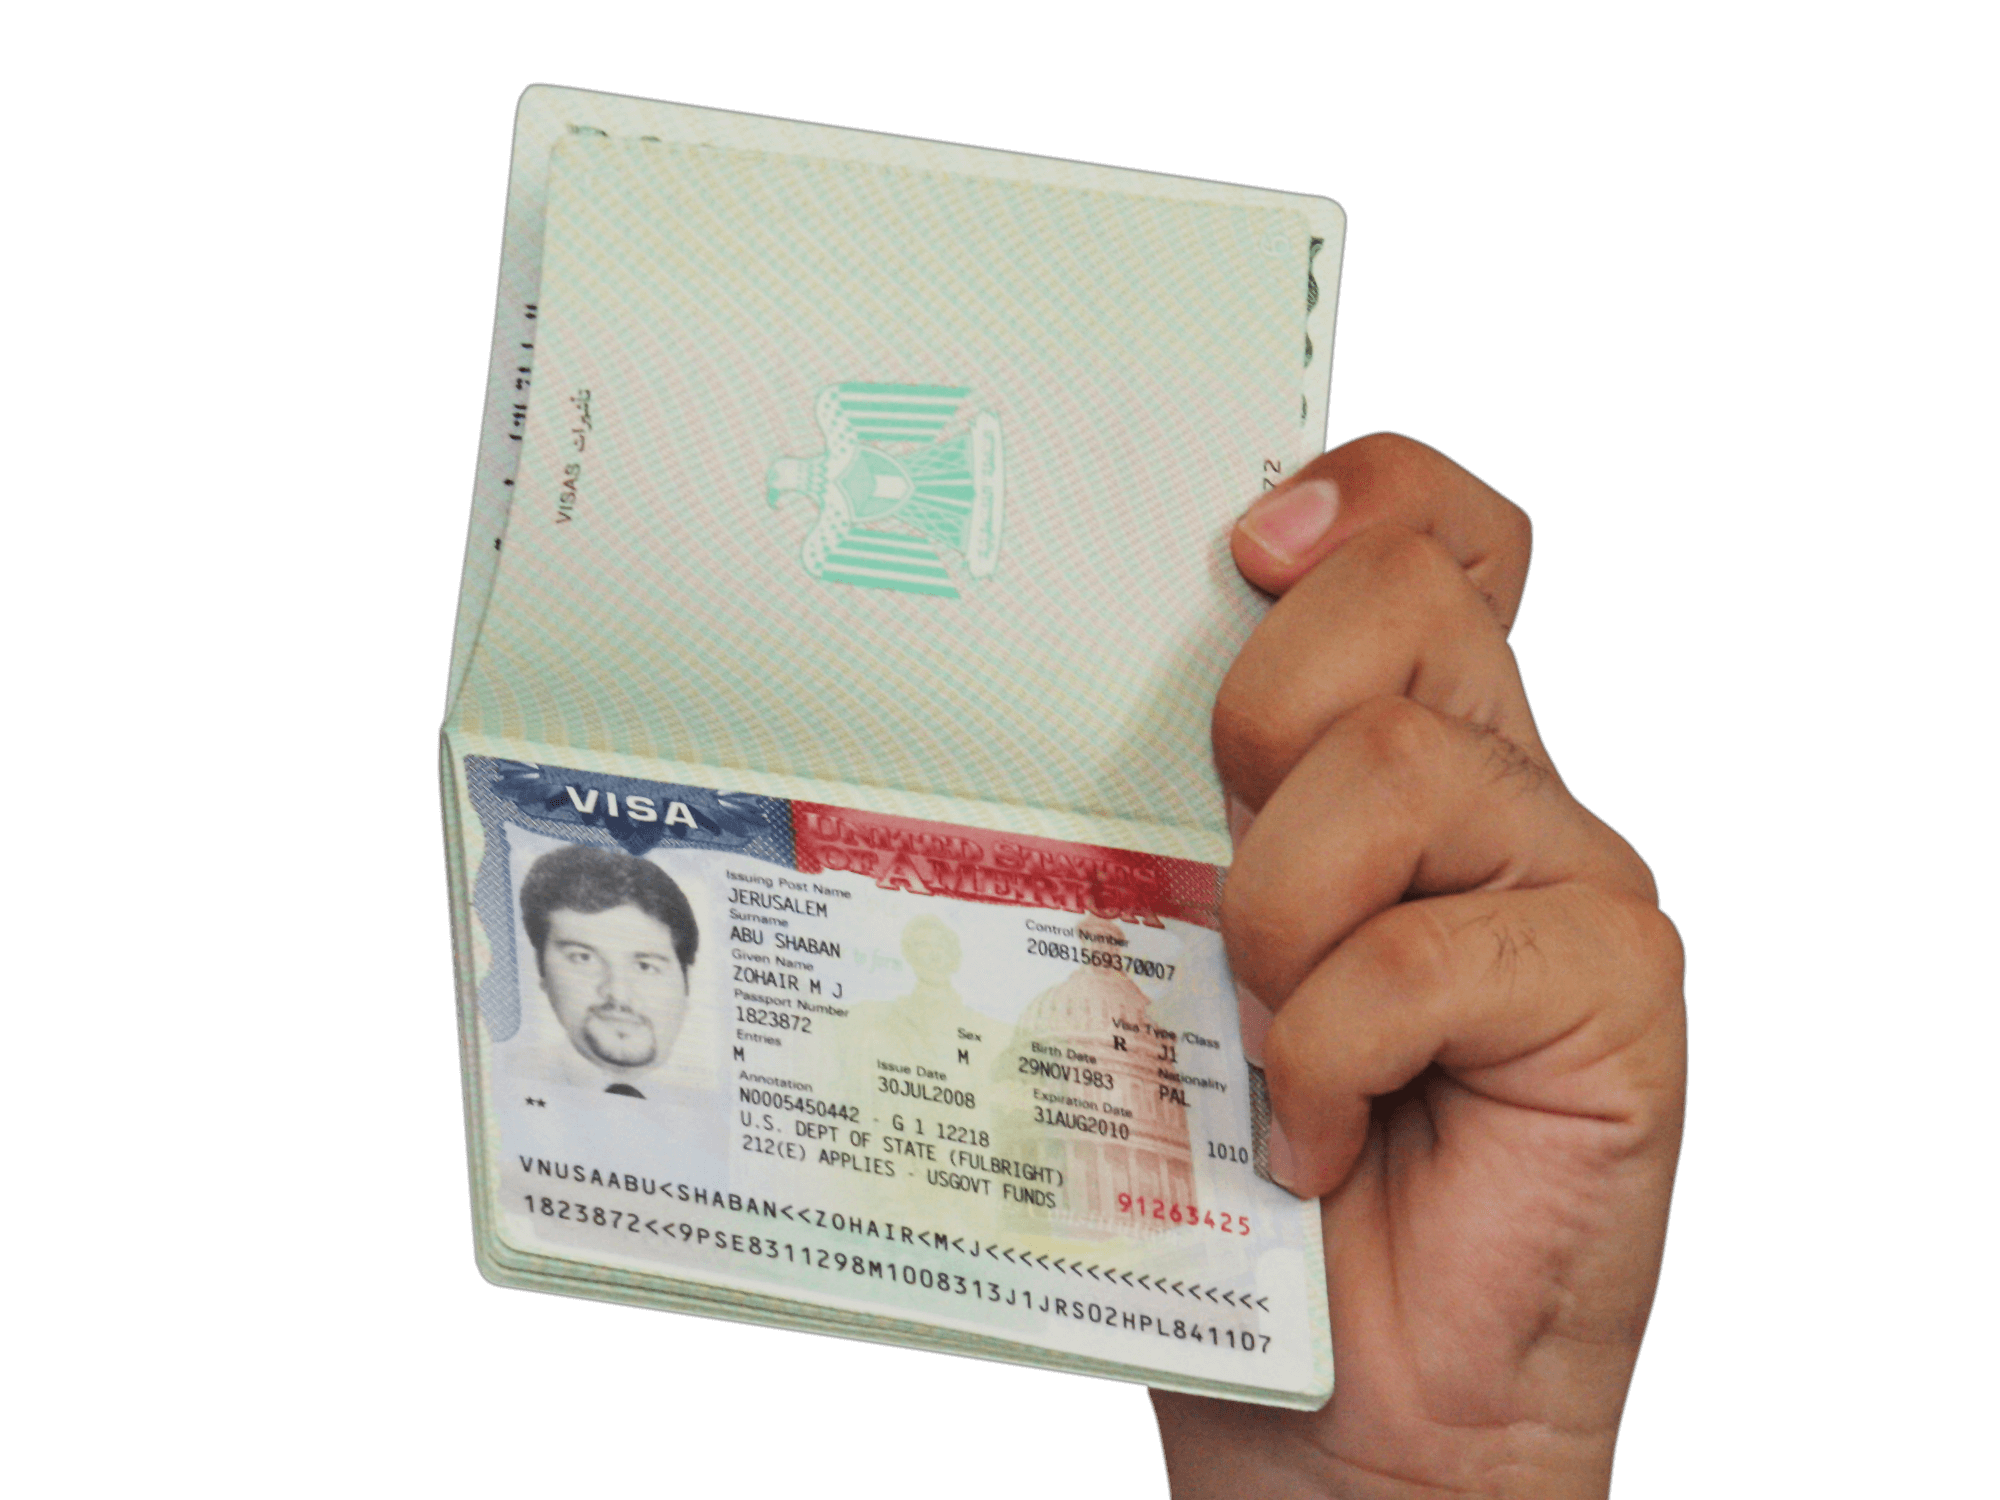 El interesado en la visa o renovación de la misma nunca debió haber sido arrestado, condenado por delito o deportado de los Estados Unidos. (Getty images, archivo)